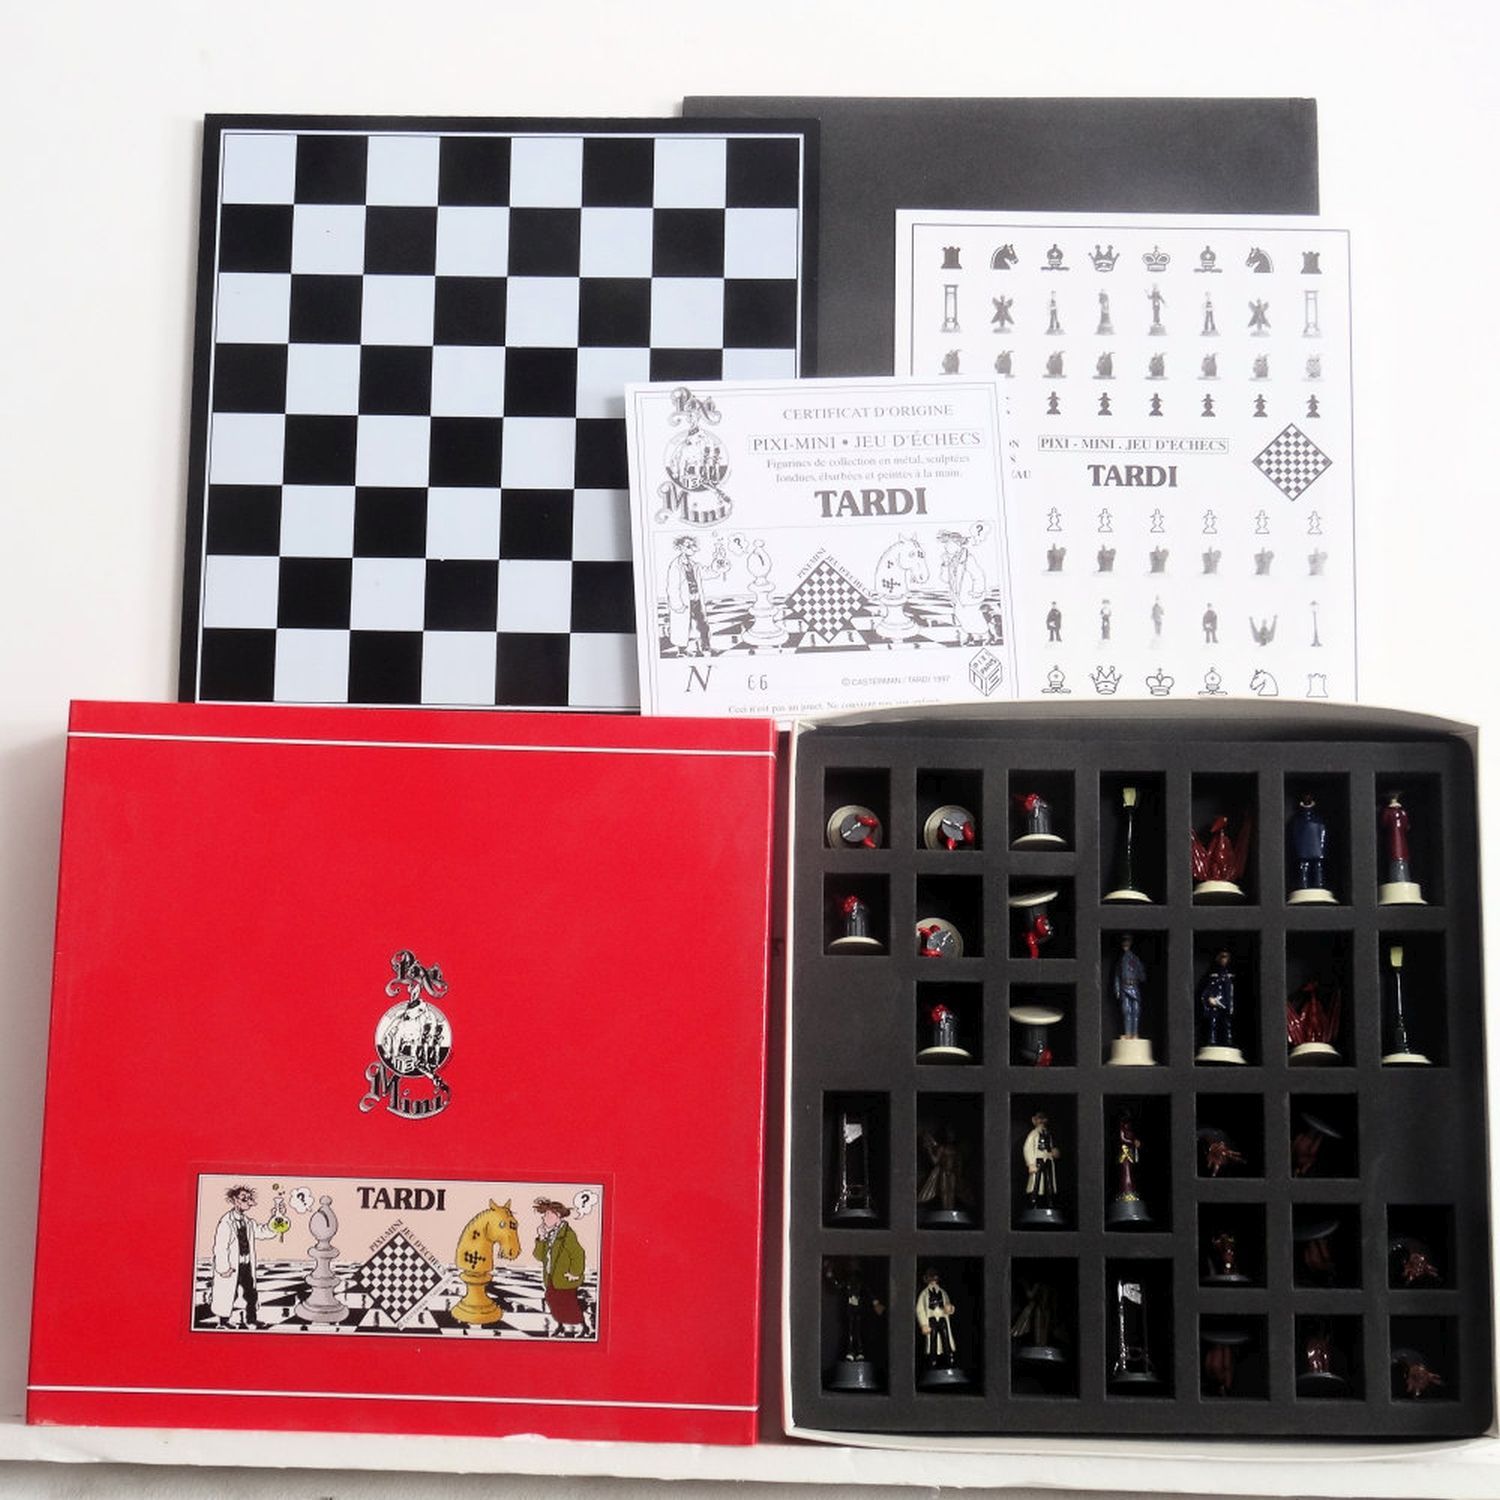 Null Jacques TARDI (1946-), Pixi mini référence 20106 Tardi - mini jeu d'échecs,&hellip;